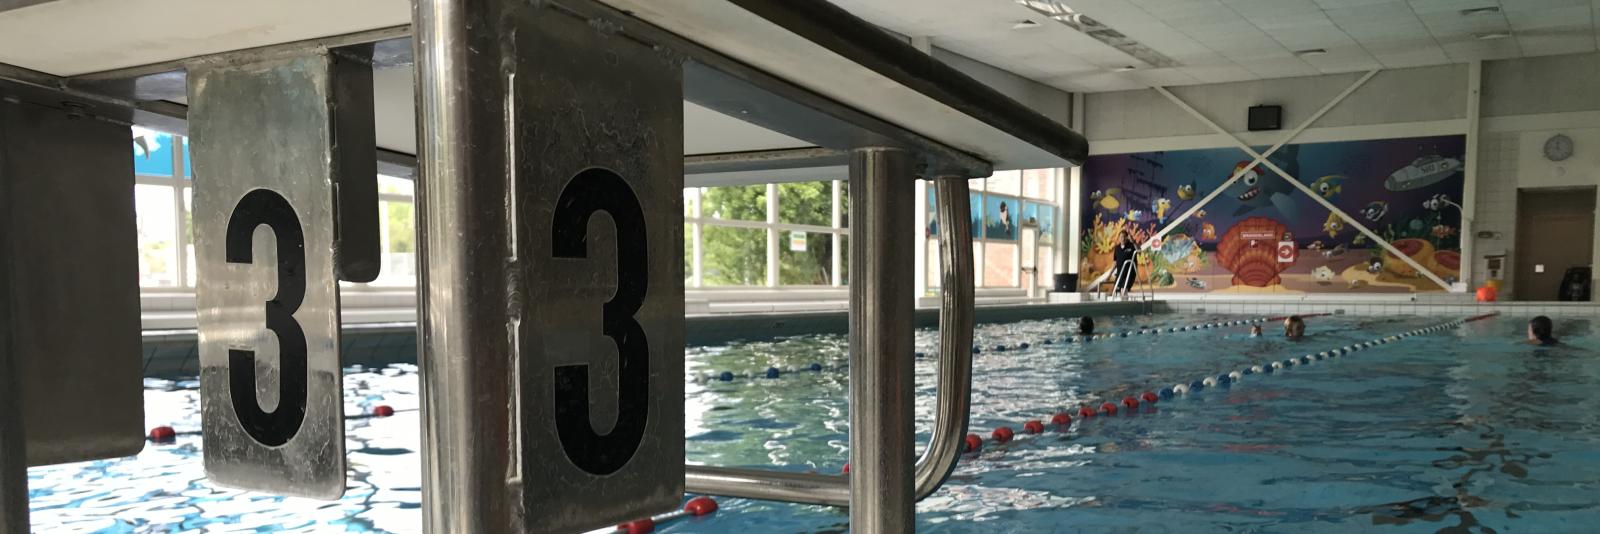 Zwaaien dok inval Thuis zwembroek aantrekken en douchen: Haarlemse zwembaden gaan maandag  open - NH Nieuws